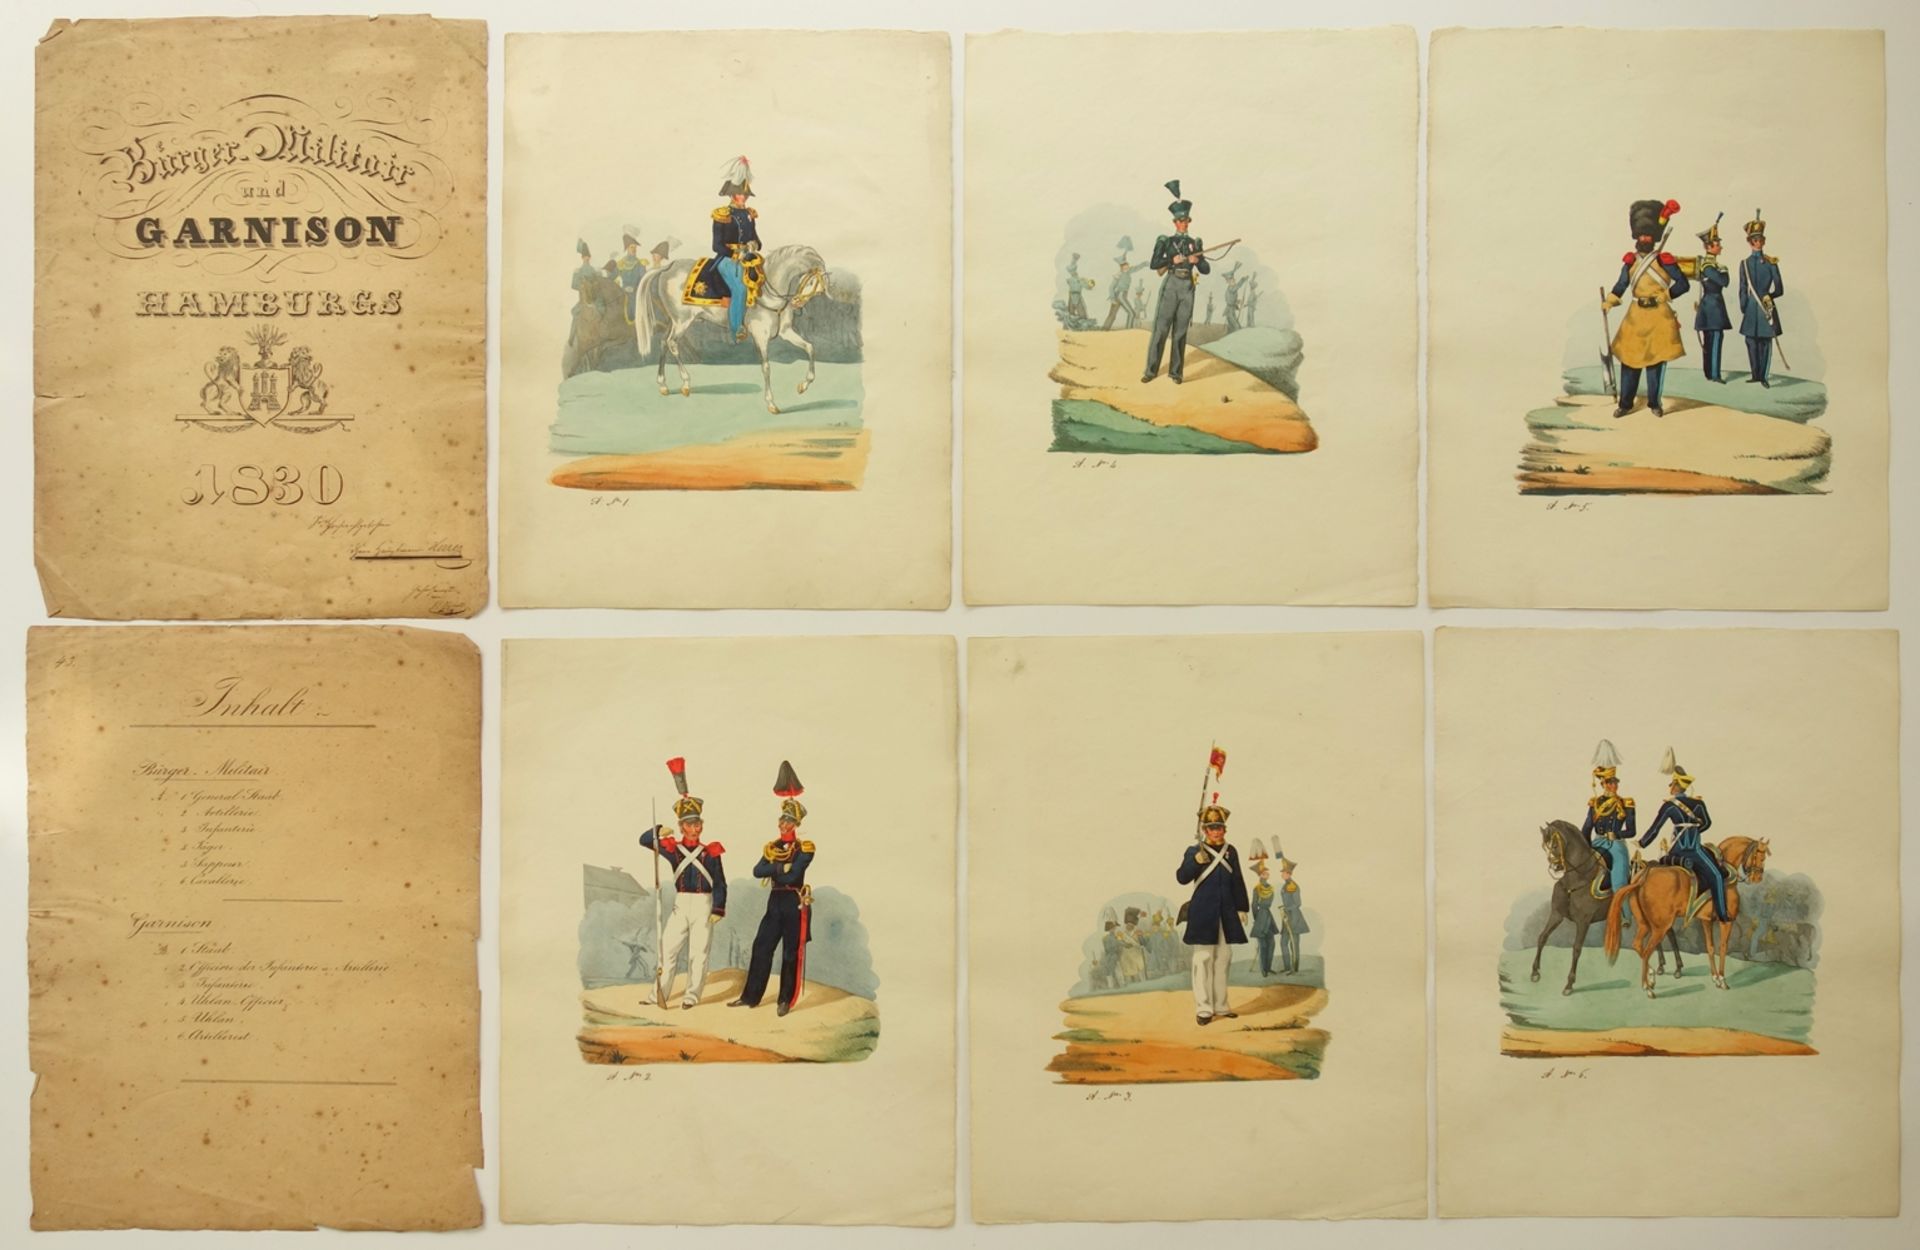 Sammlung mit 12 kolorierten Lithografien "Bürger-Militair und Garnison Hamburgs", 1830, von Hans